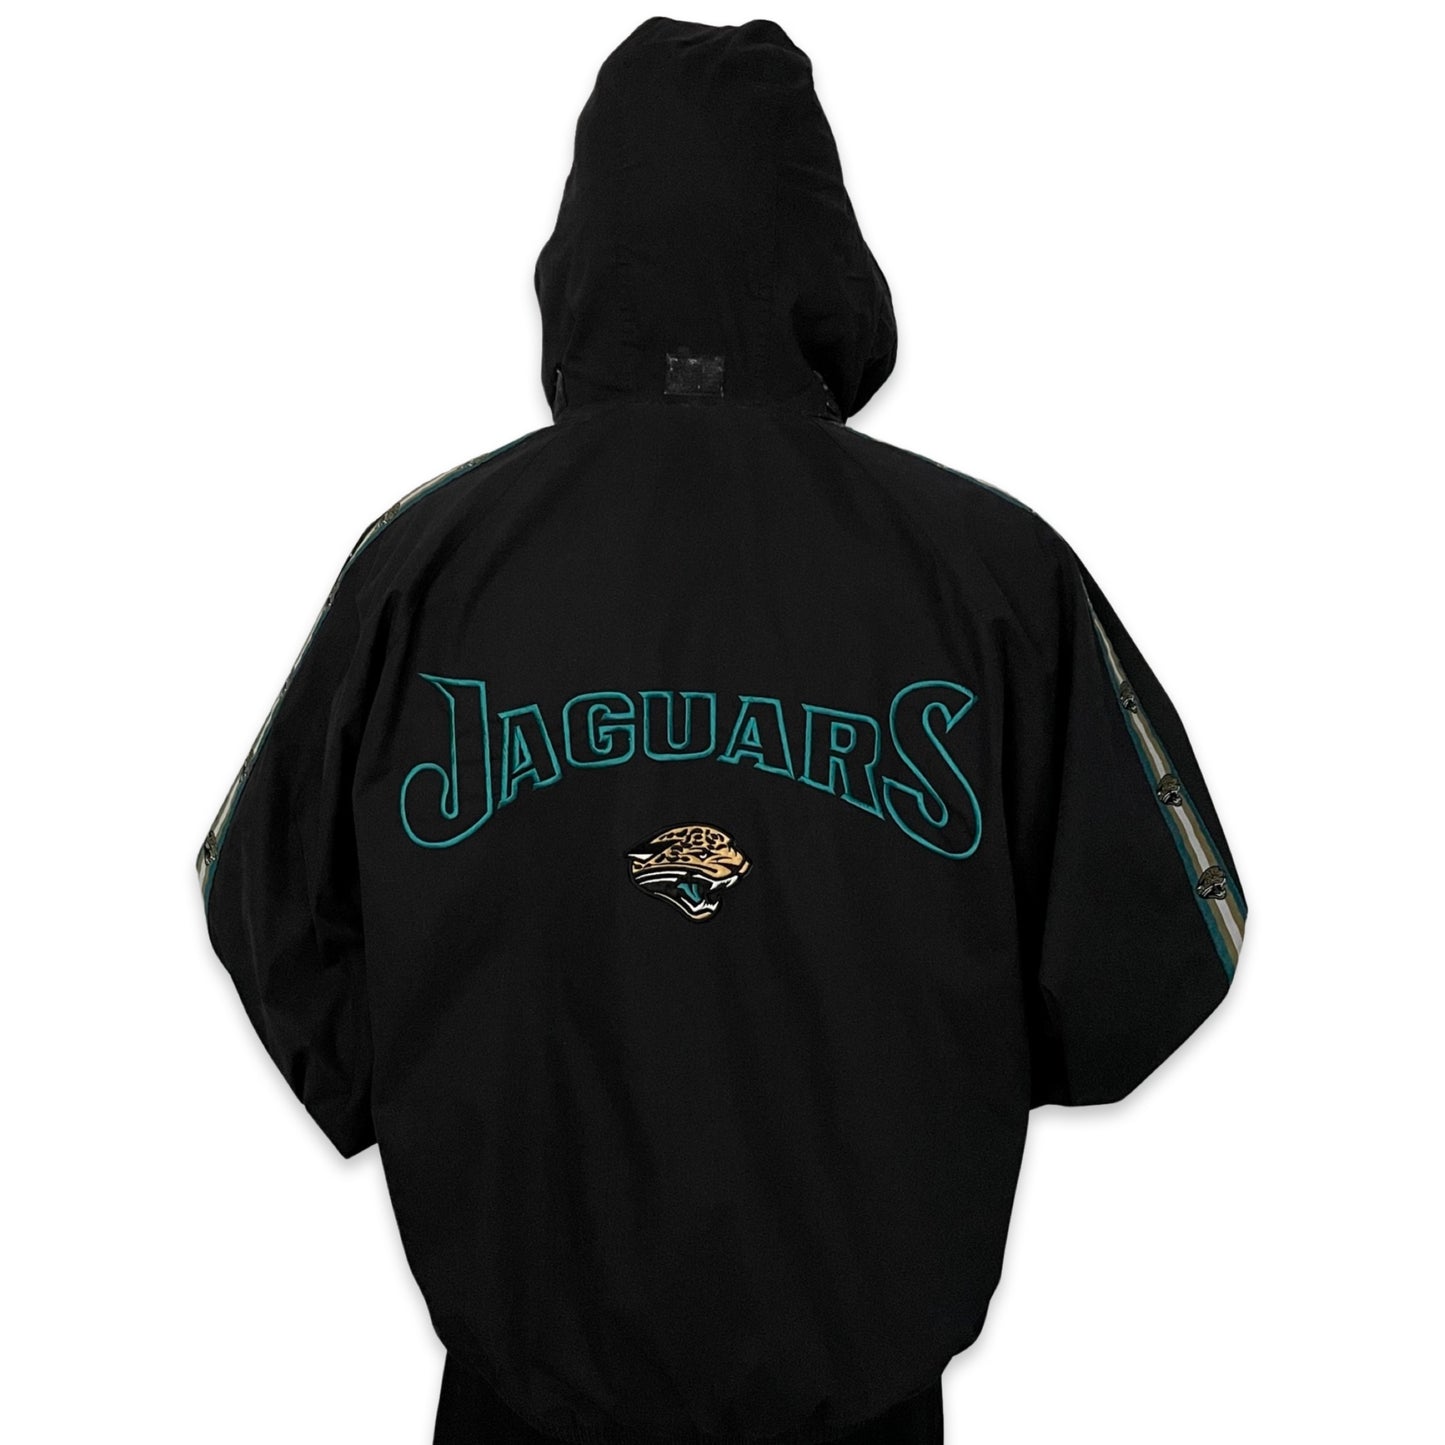 Vintage Jacksonville Jaguars PRO PLAYER jacket size LARGE